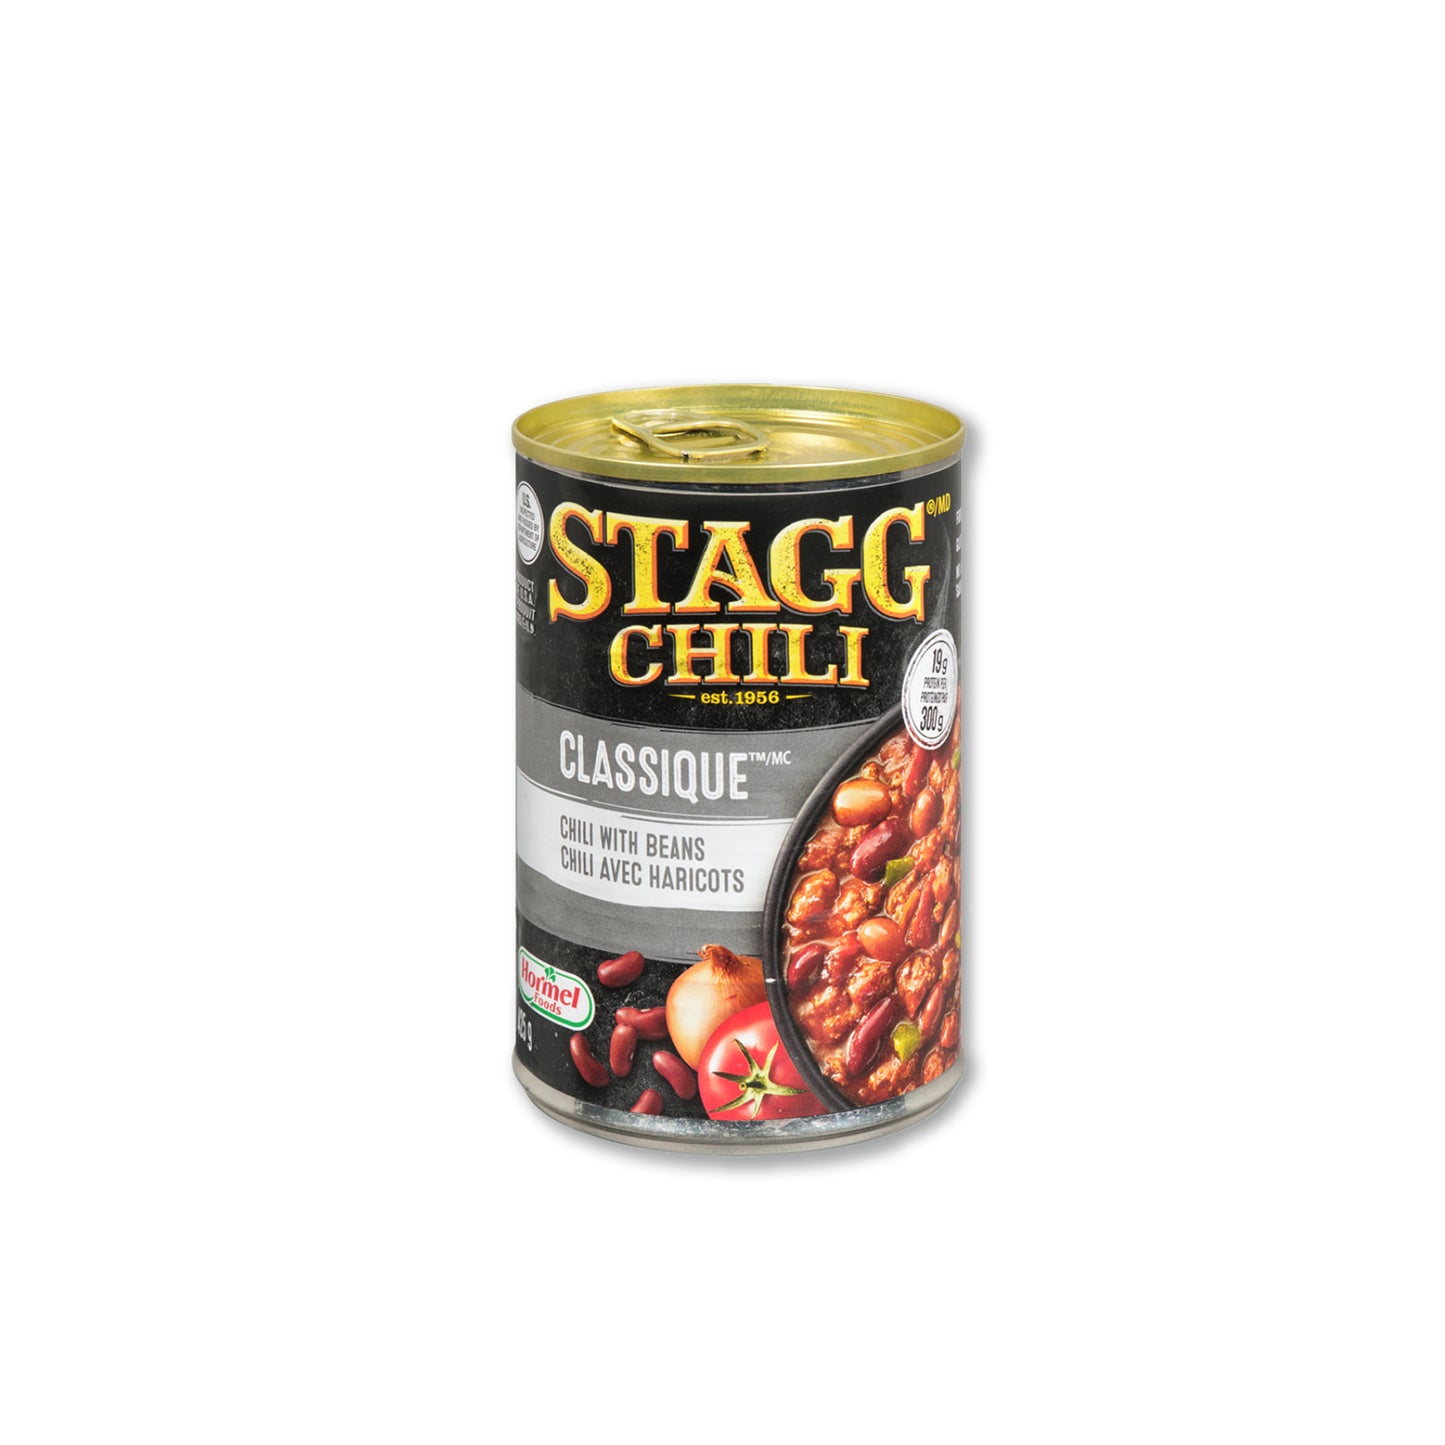 Stagg Chili - Classique Style